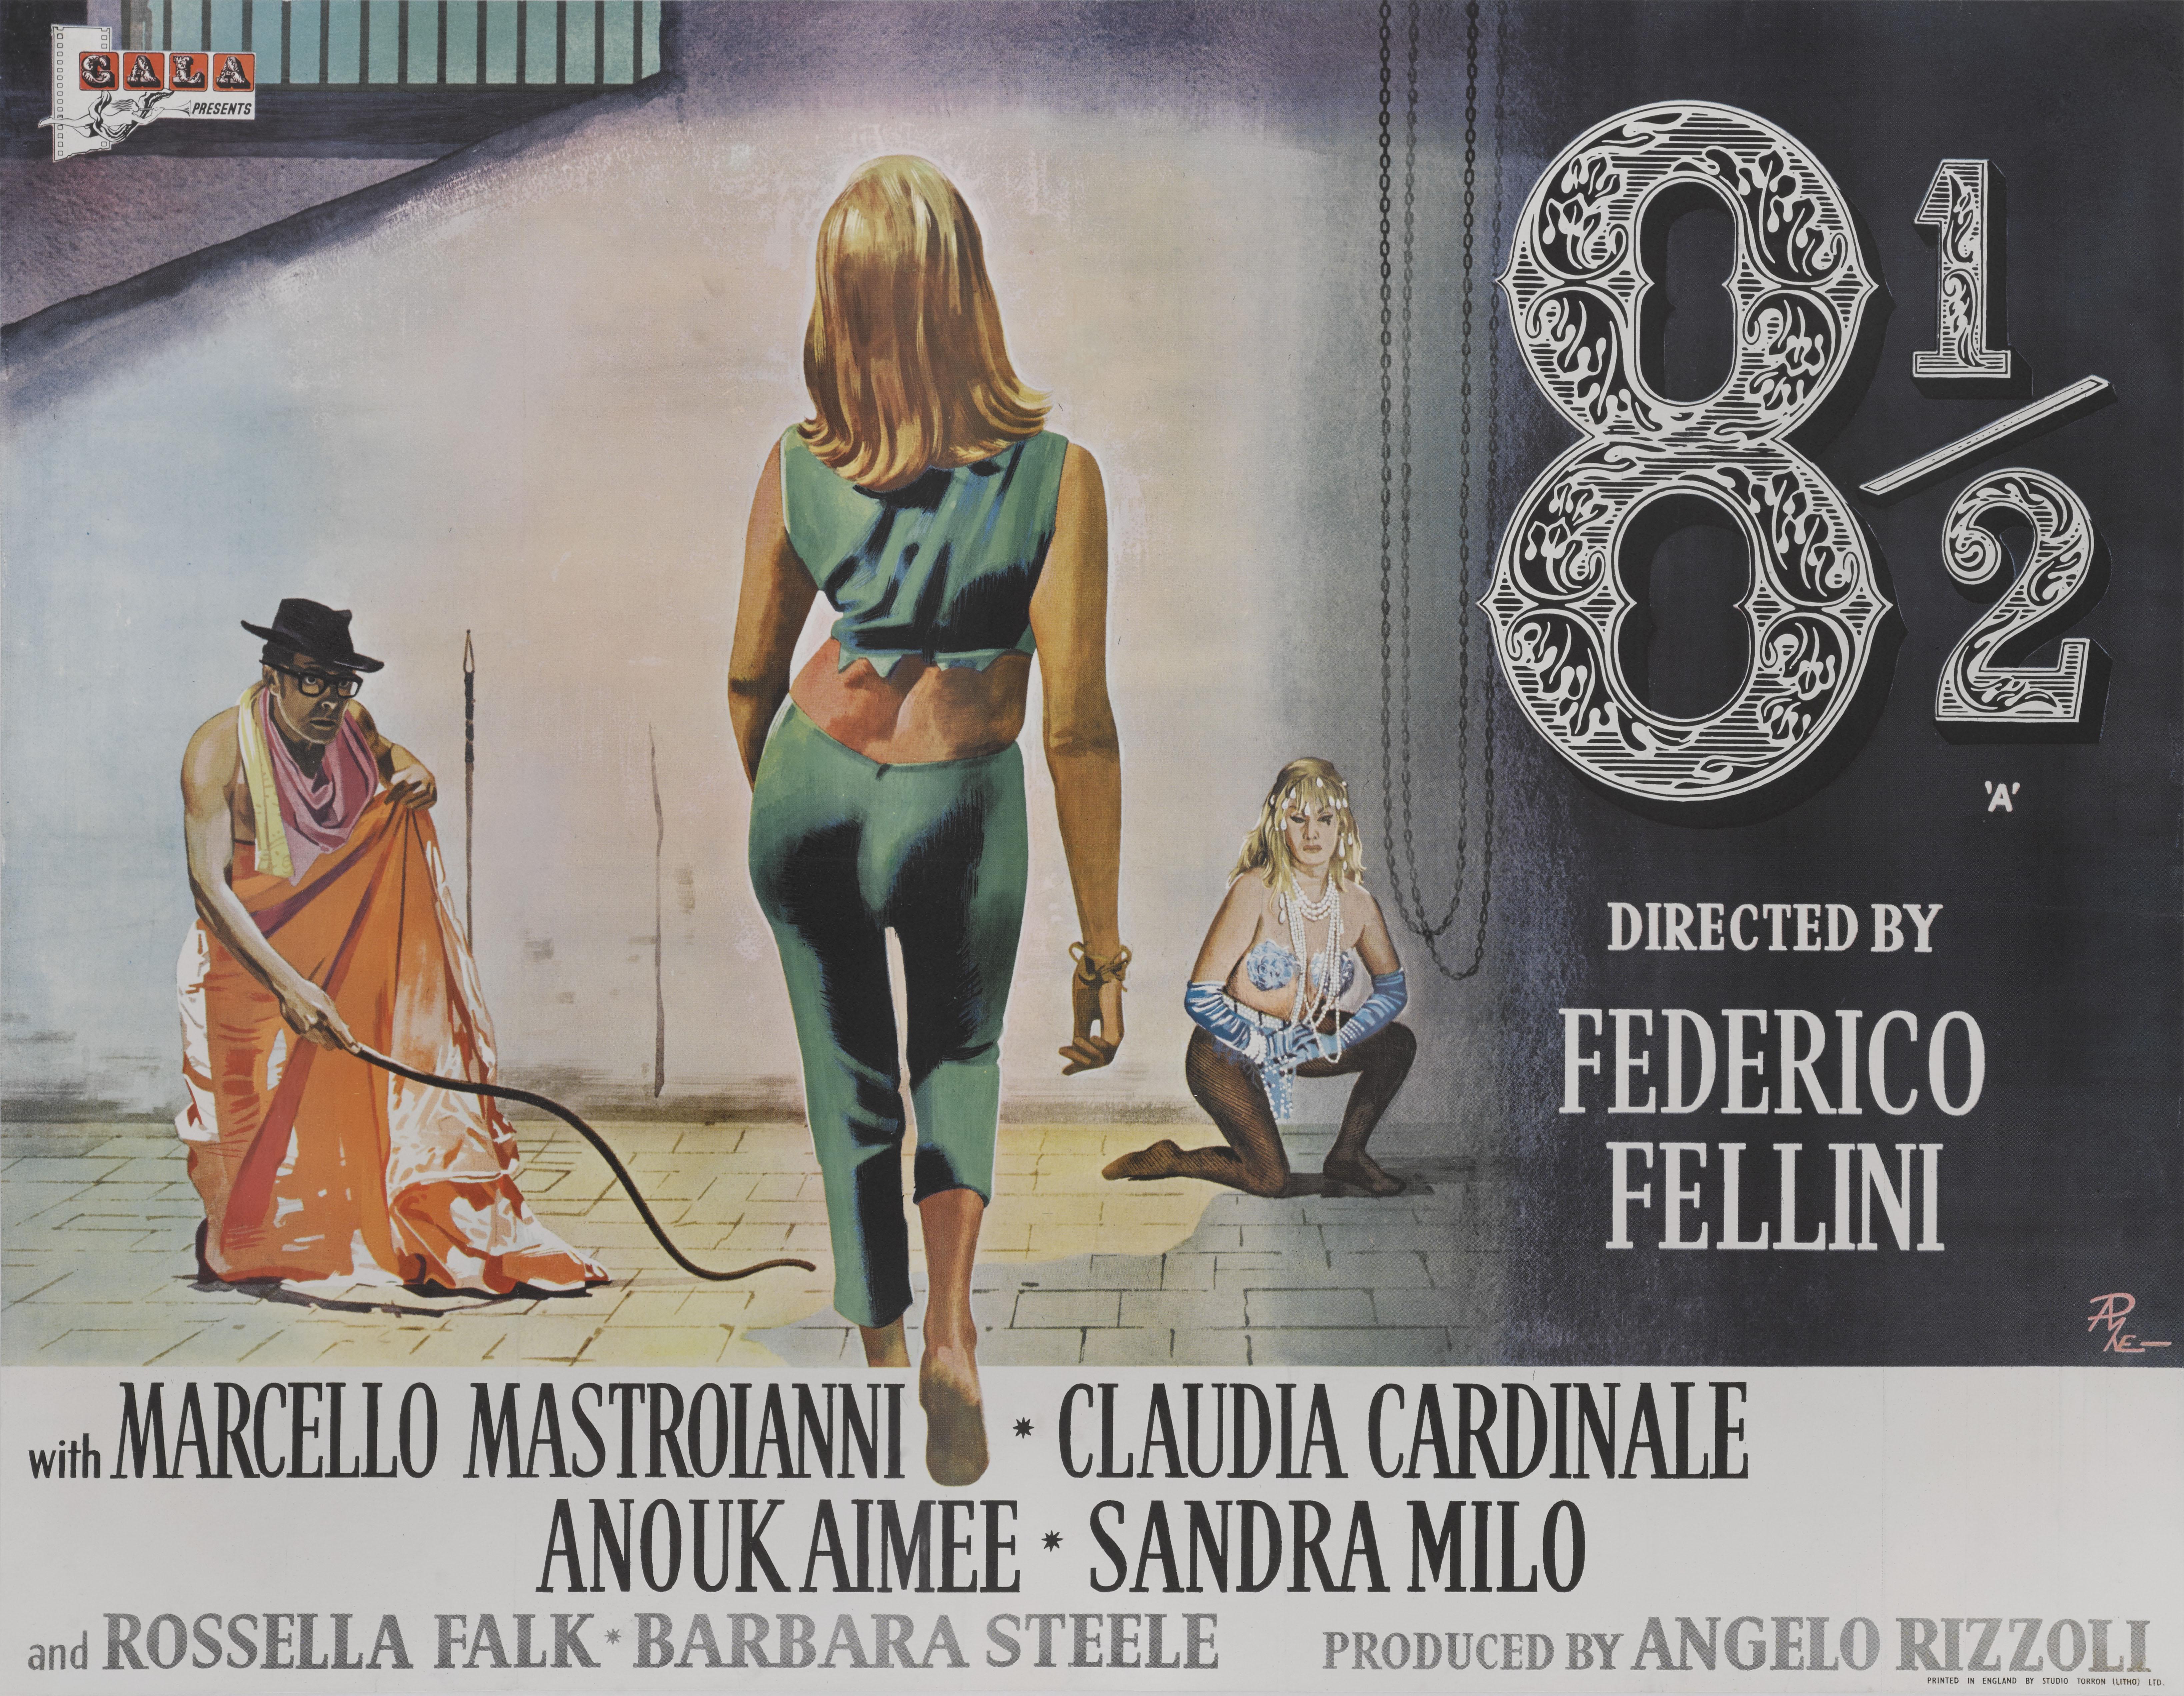 Exceptionnellement rare affiche de film britannique originale pour le drame de 1963 du réalisateur Federico Fellini ; il a utilisé le titre 8 1/2 car il s'agissait de son projet de film 8 1/2. Ce film a remporté les Oscars du meilleur film en langue